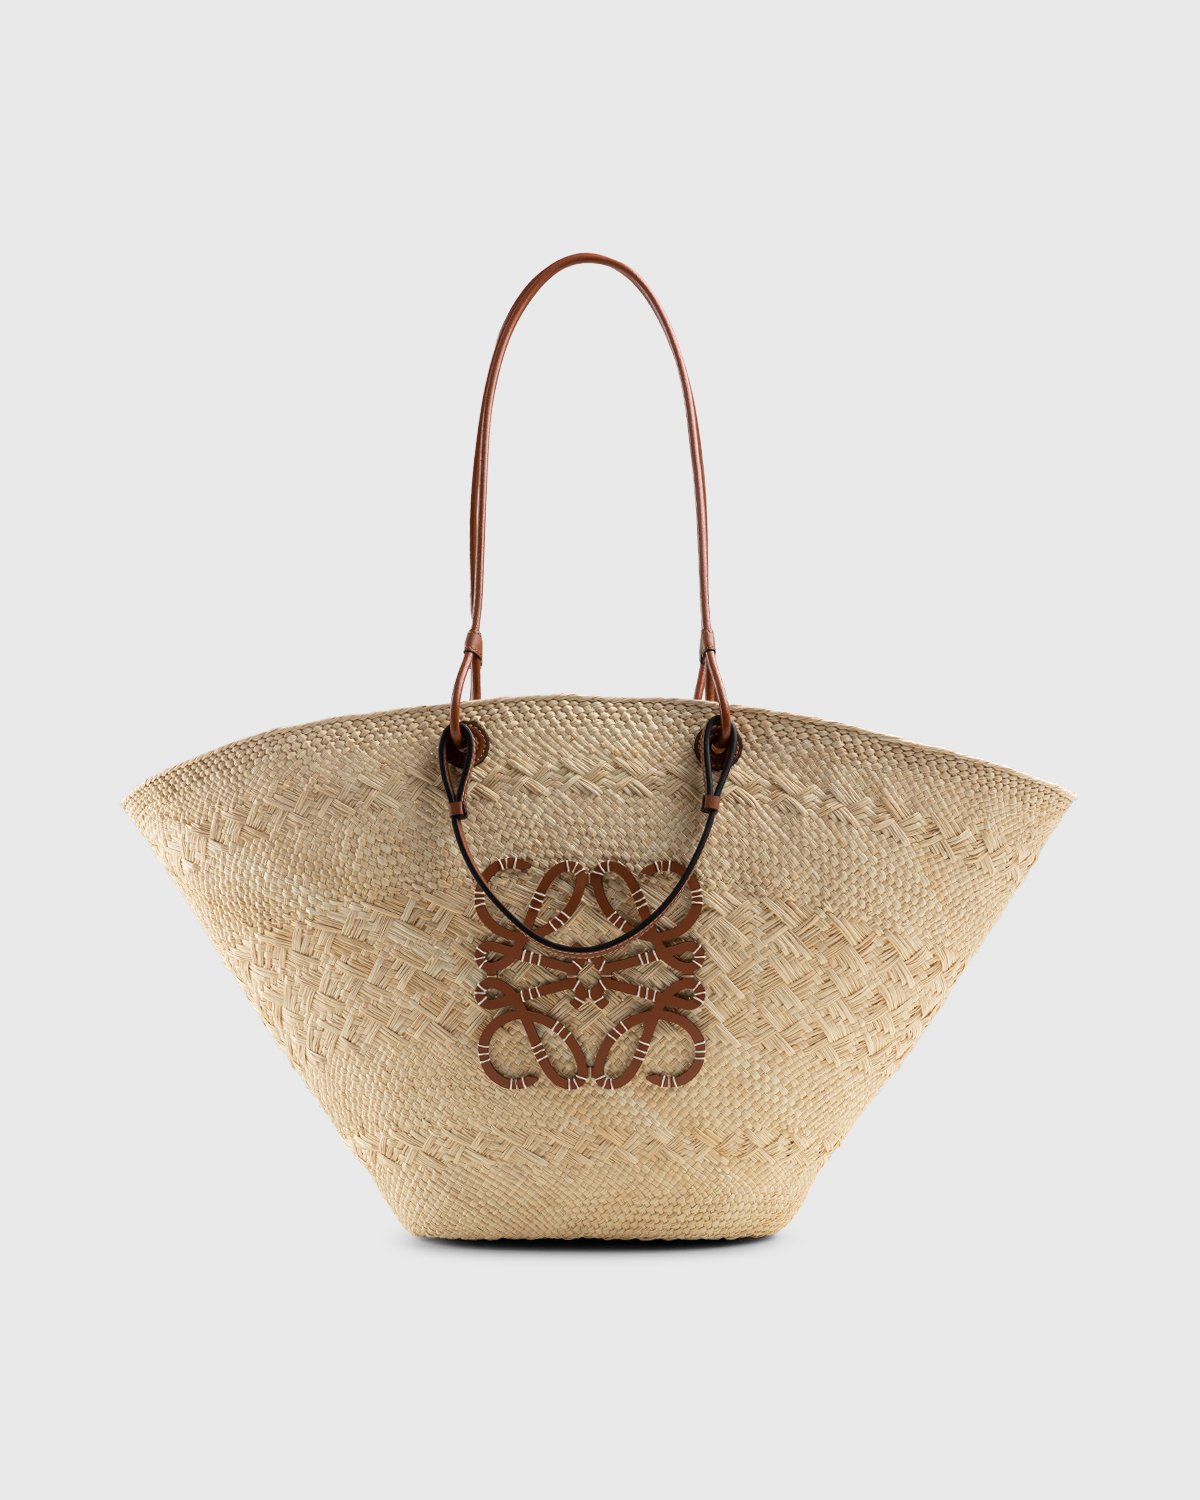 Loewe Anagram Basket Tote - Brown Totes, Handbags - LOW52025